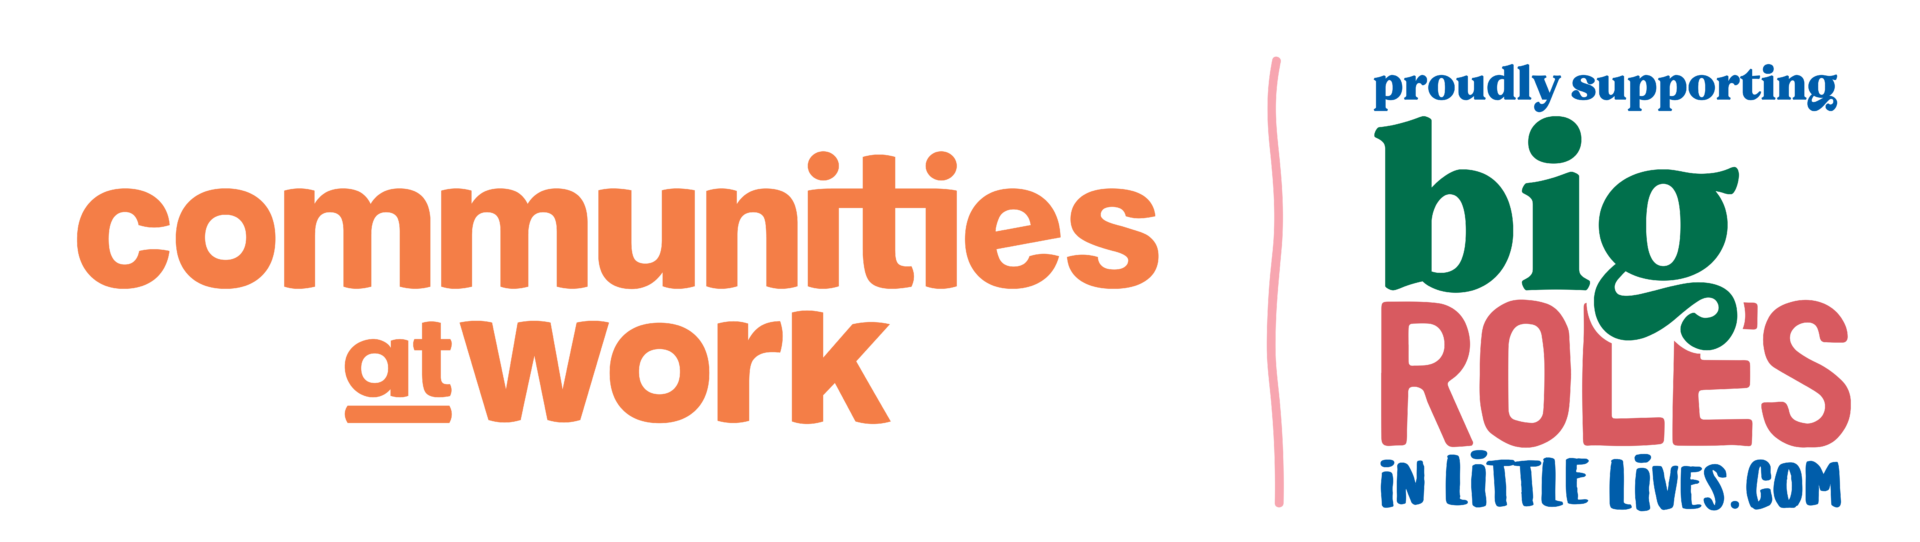 CommunitiesAtWork_BigRoles-memberslockup